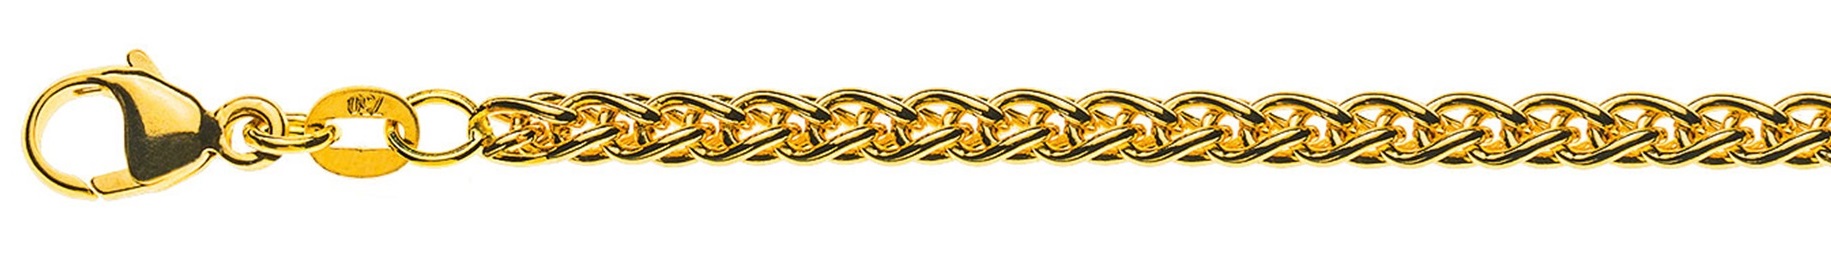 AURONOS Prestige Collier or jaune 18K chaîne câble 60cm 3.3mm